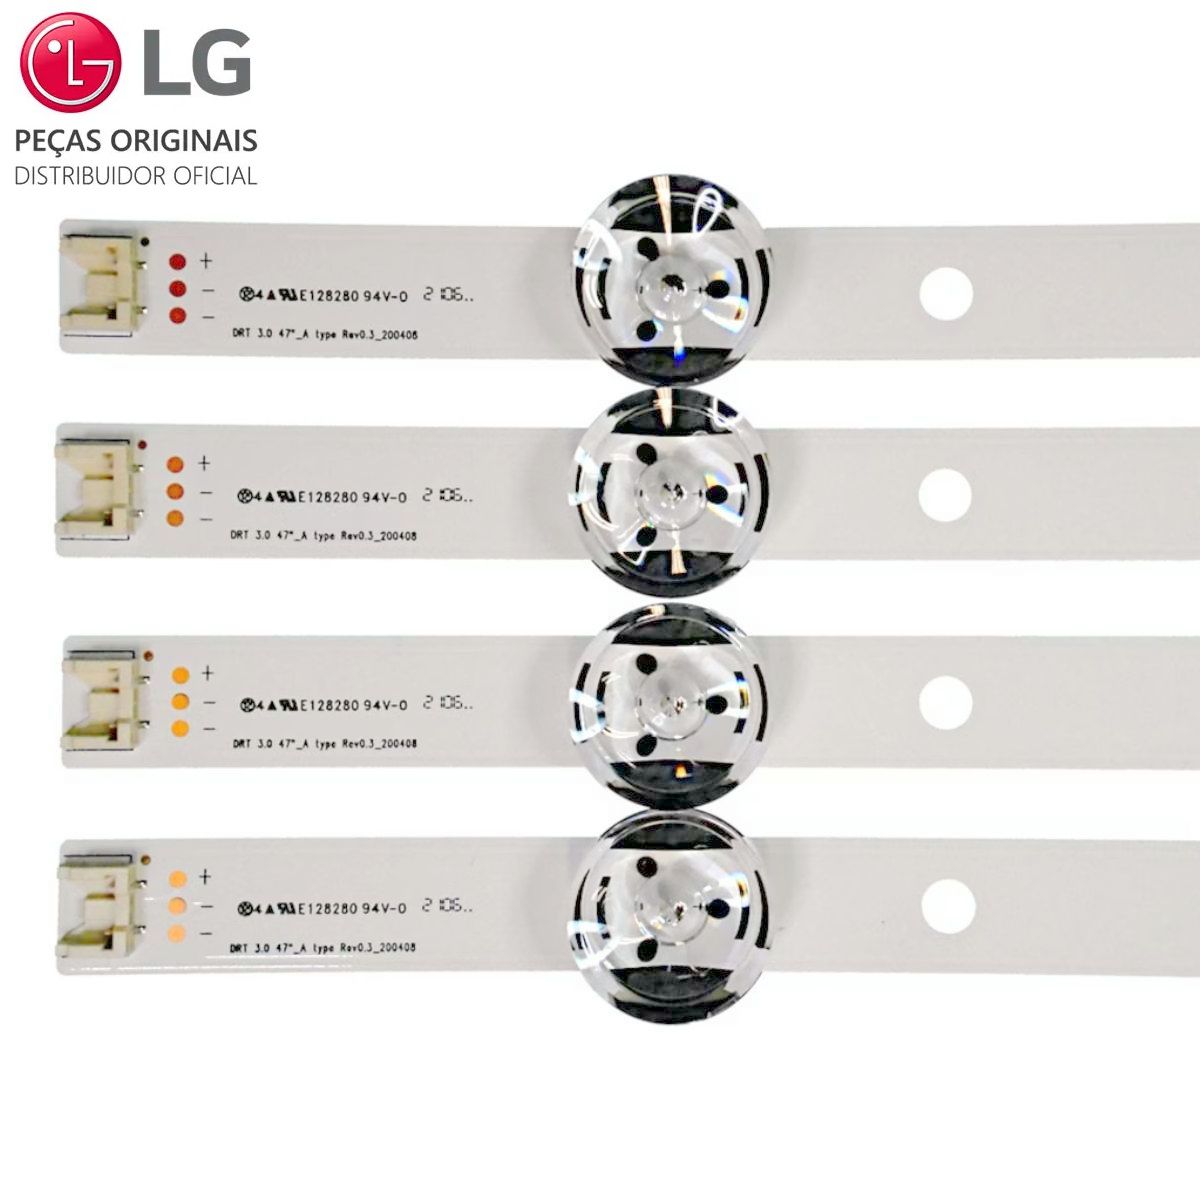 KIT 8 BARRAS DE LED TV LG 47 - AGF78400901 - ORIGINAL - Distribuidor  oficial de peças e acessórios LG no Brasil